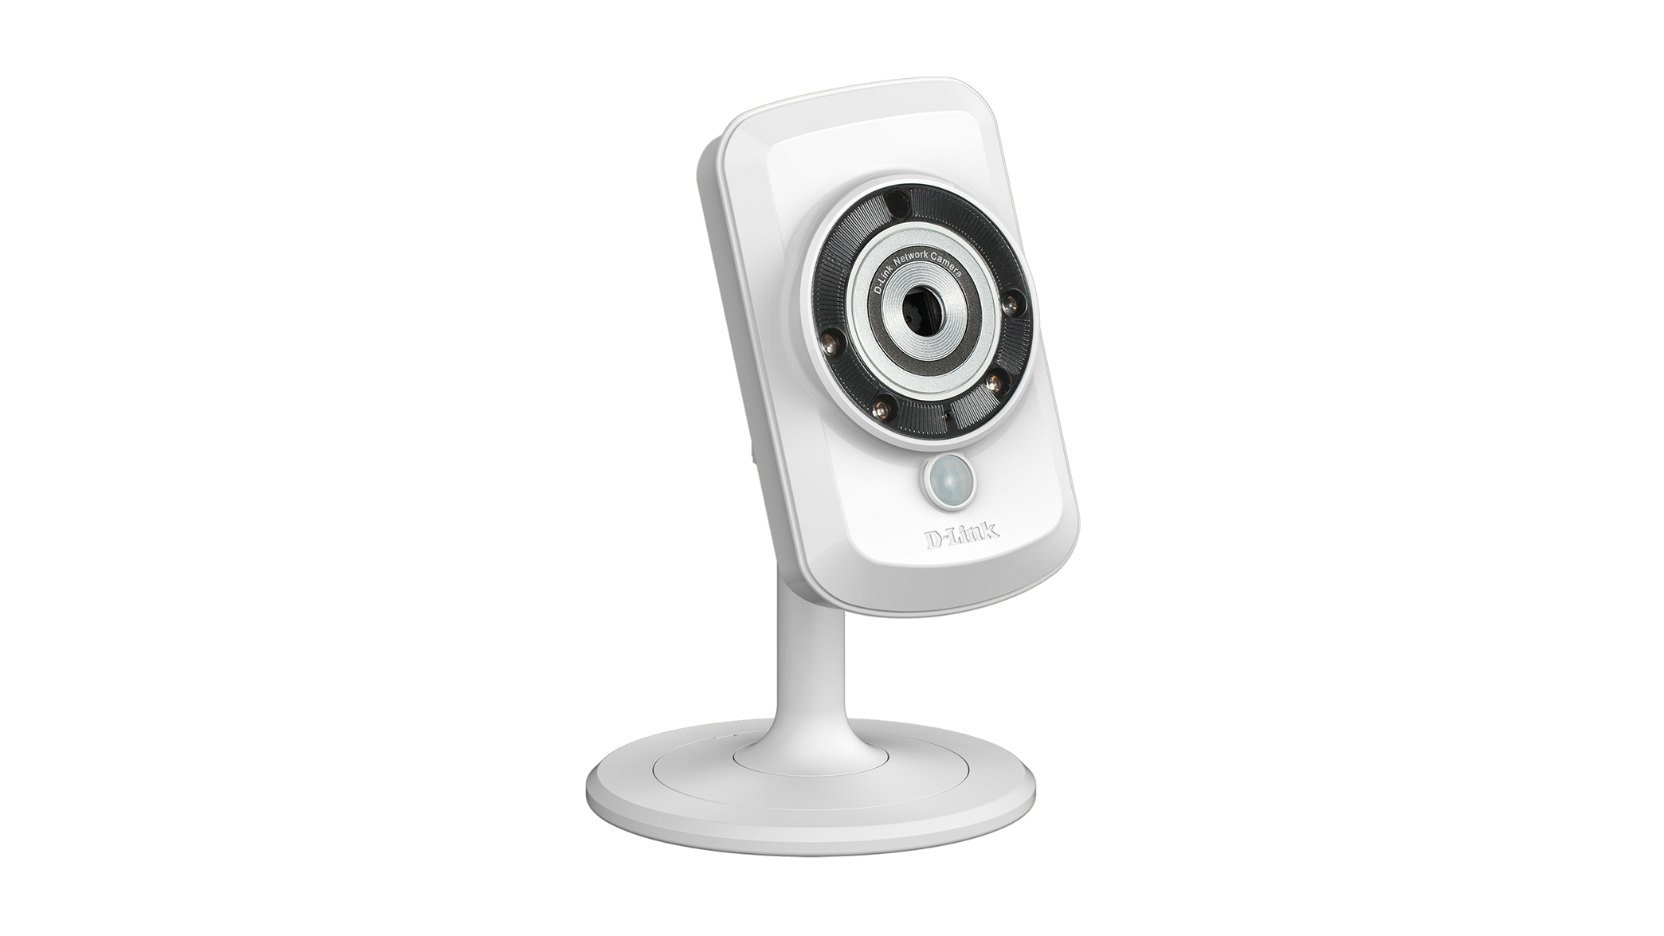 D Link Webcam Installation Procedure